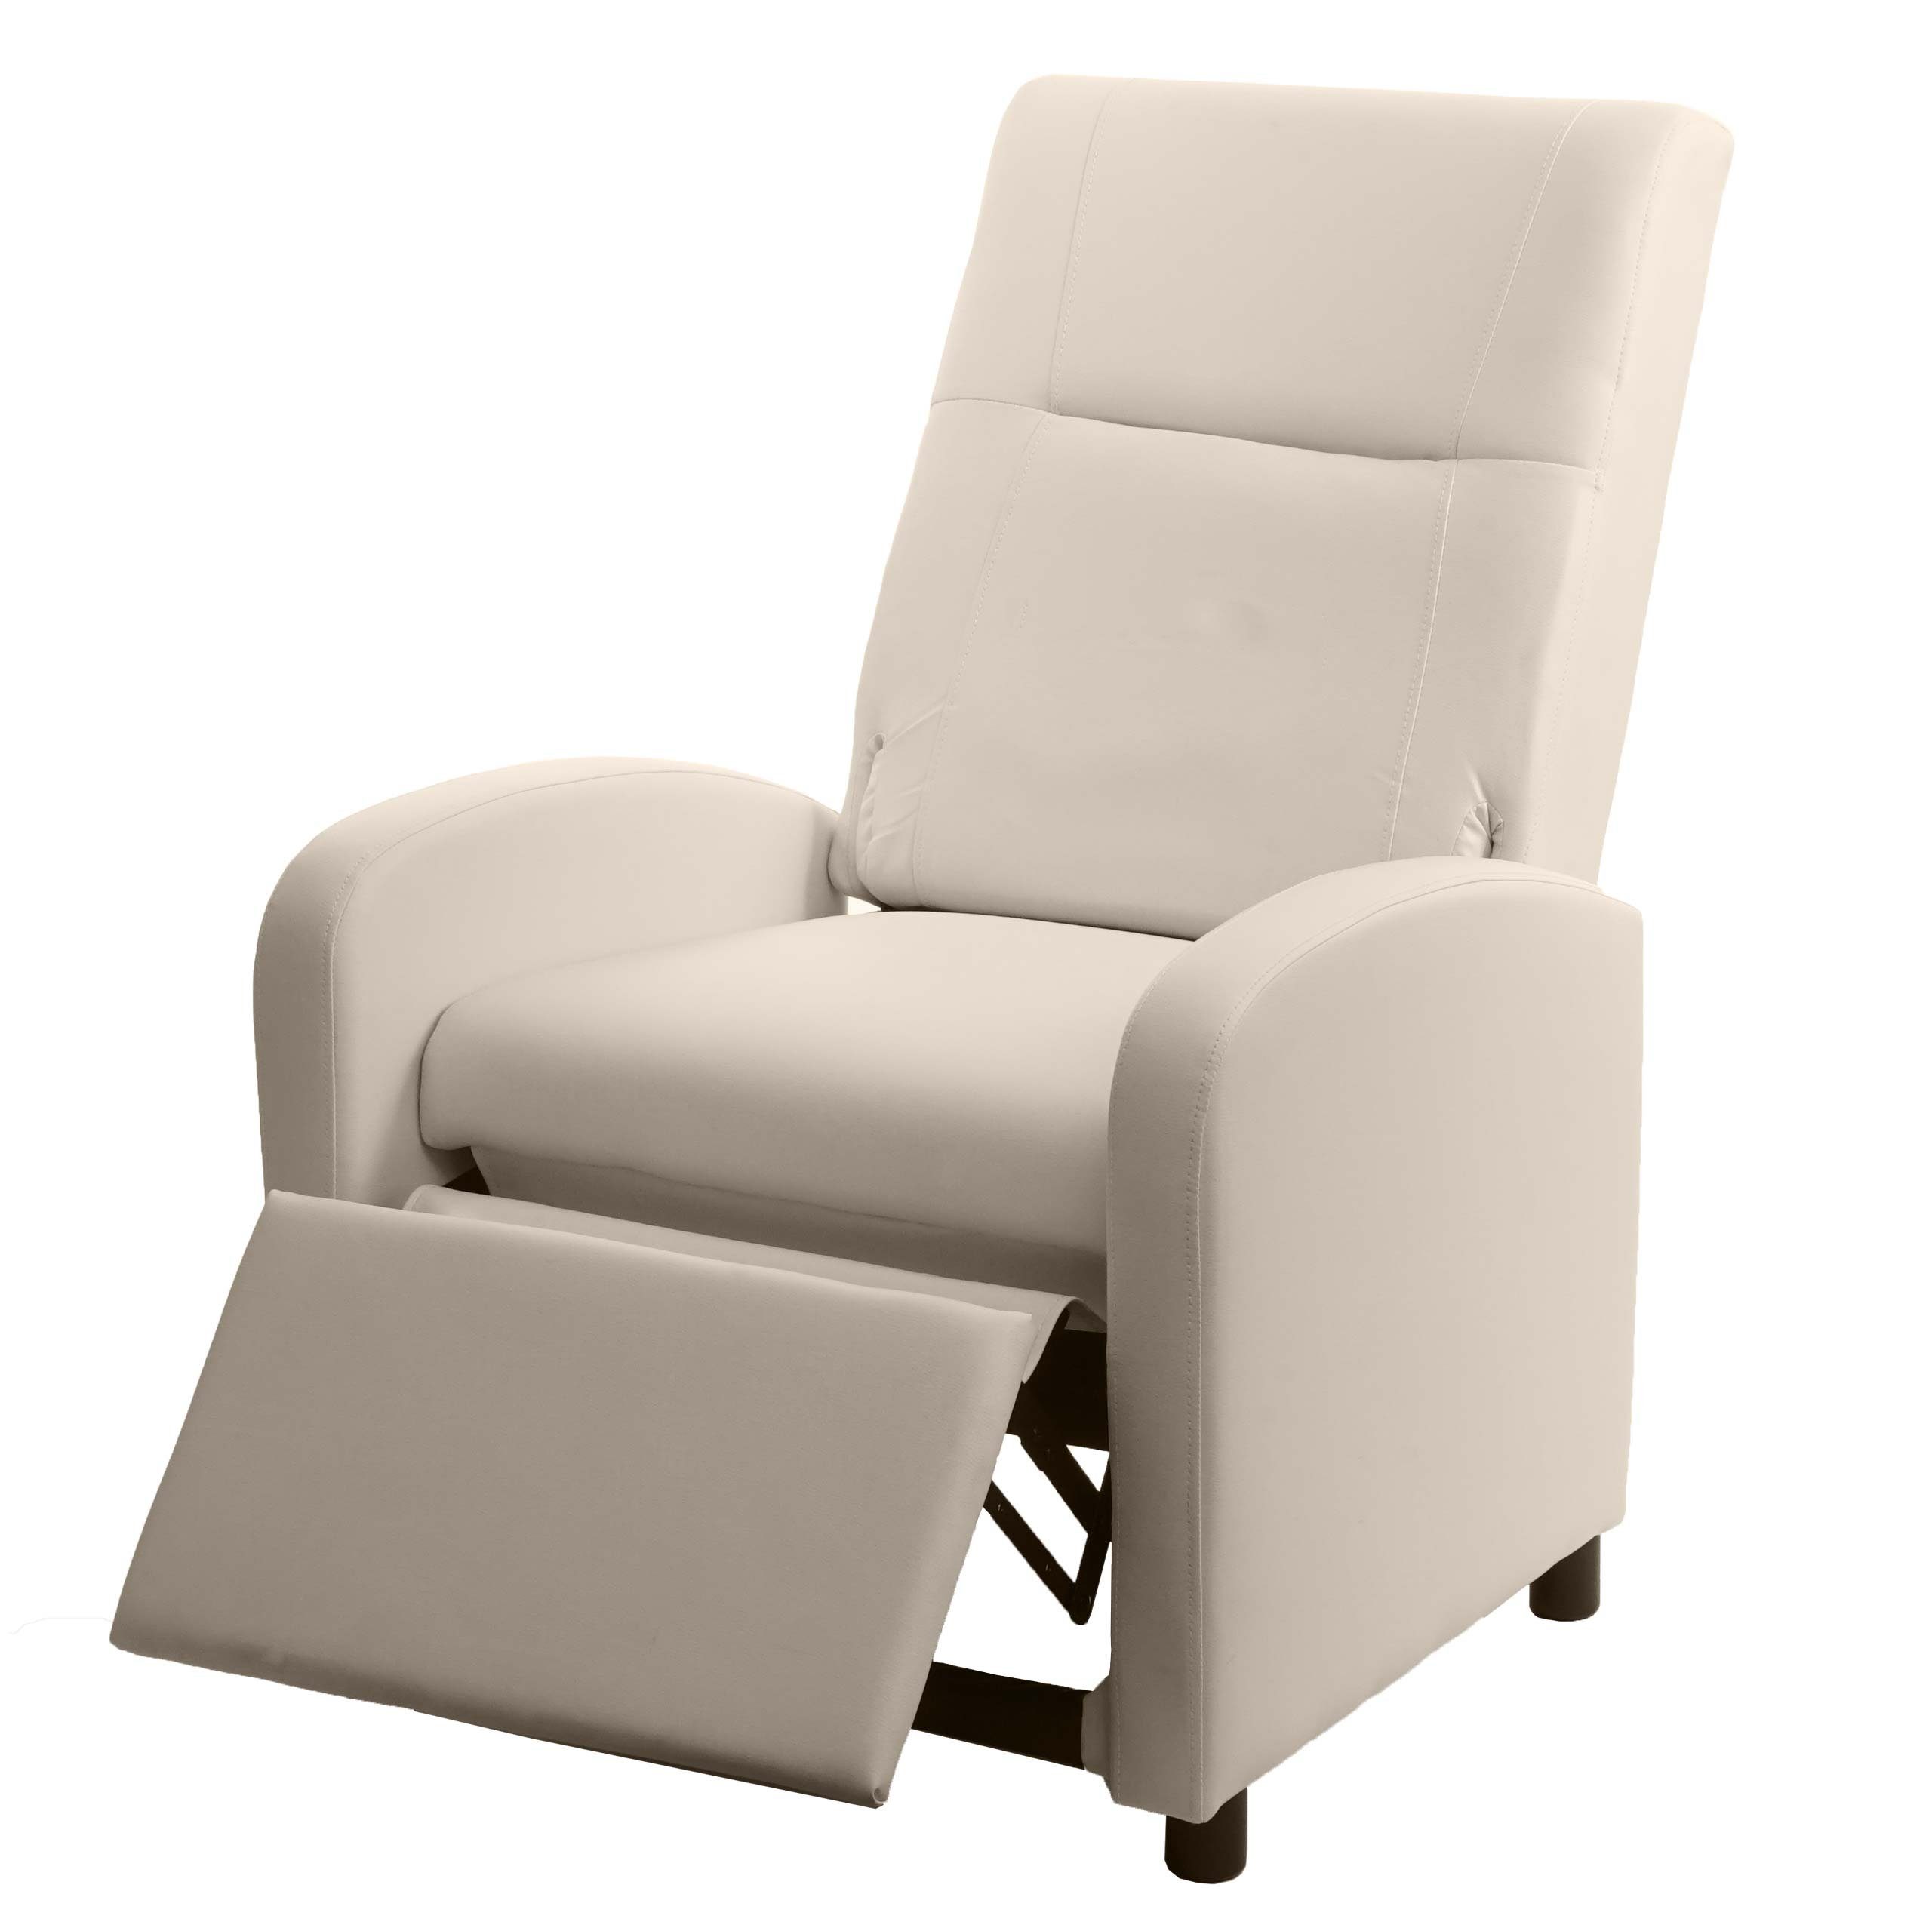 MCW TV-Sessel MCW-H18, Synchrone Verstellung der Rücken- und Fußlehne, Synchrone Verstellung der Rücken- und Fußlehne, Klappbare Rückenlehne cream